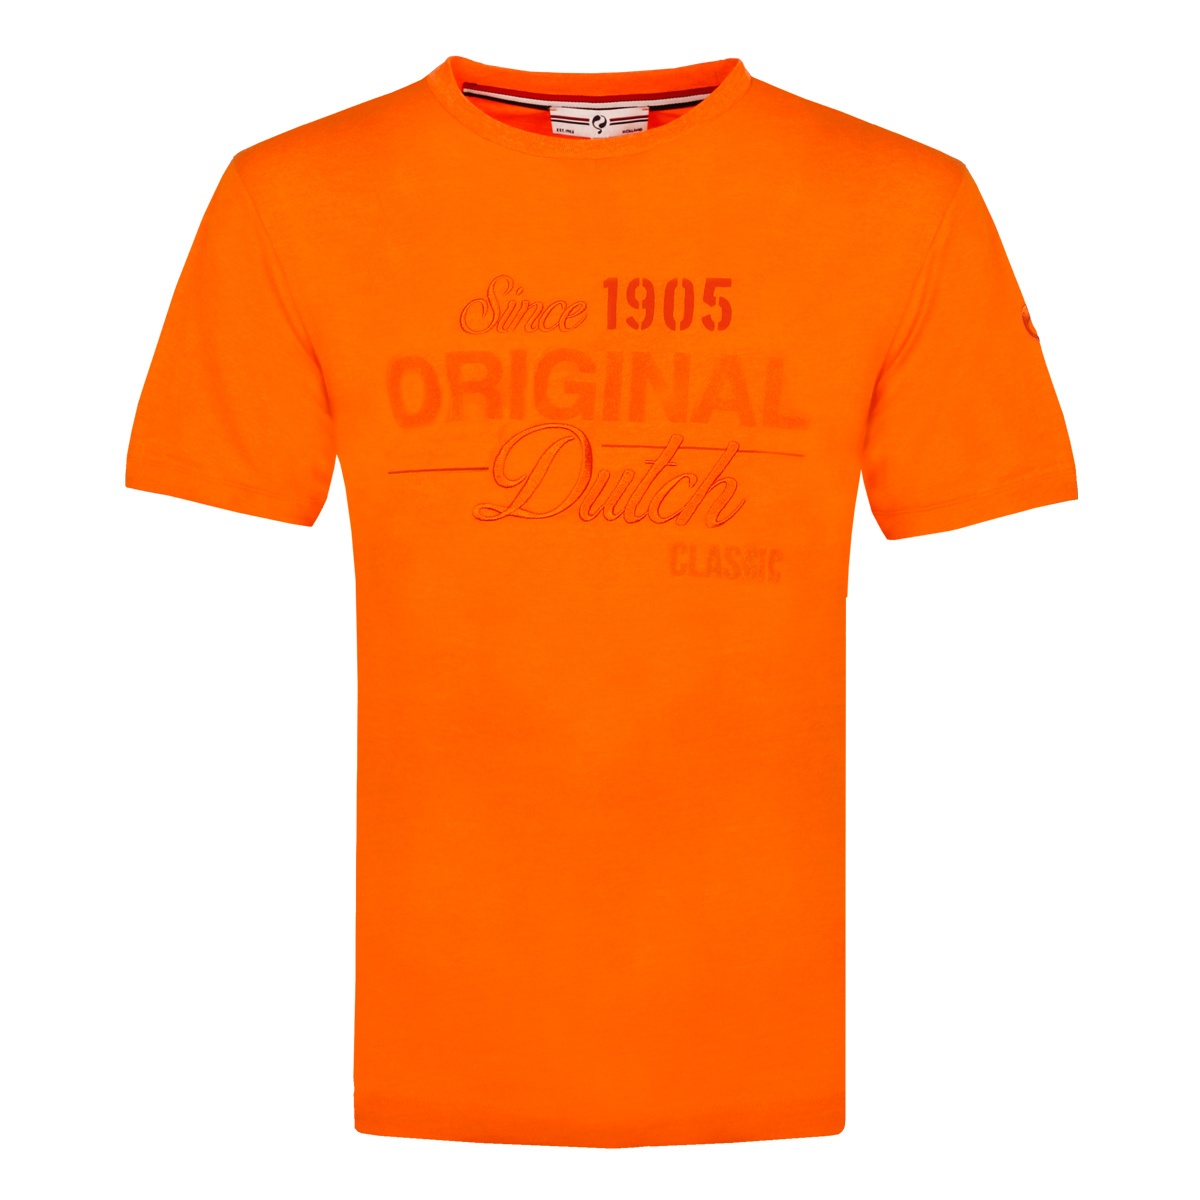 Heren T-shirt Loosduinen - NL oranje